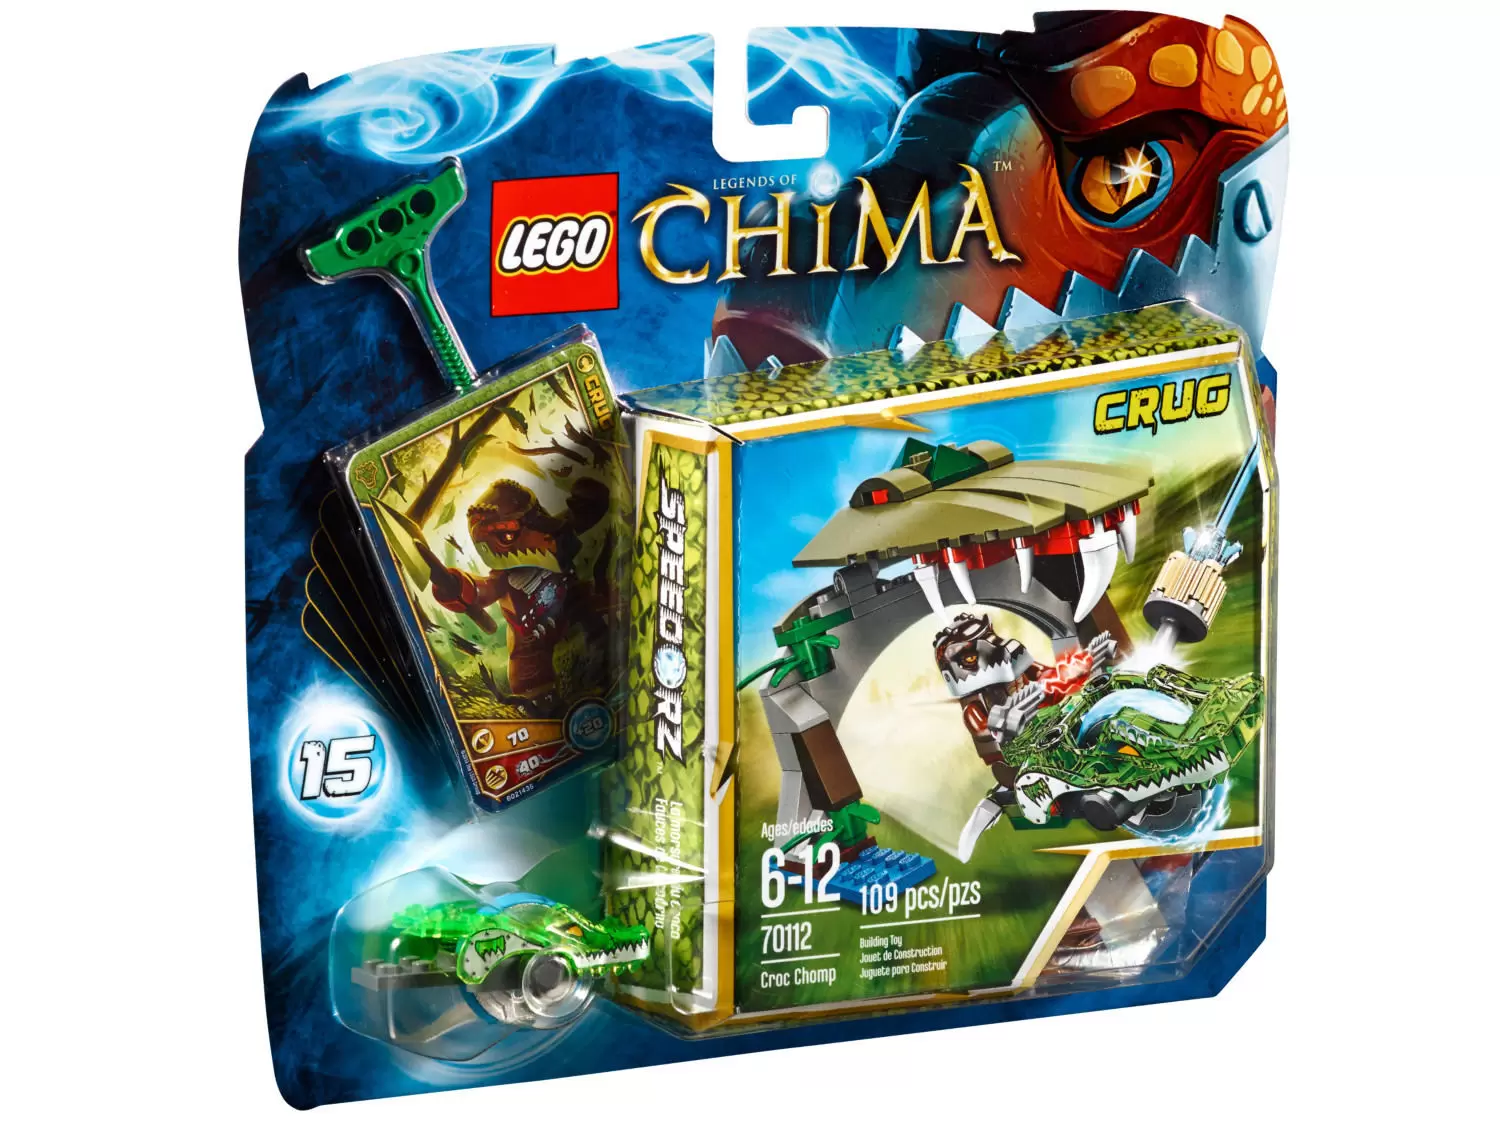 LEGO Legends of Chima - Croc Chomp